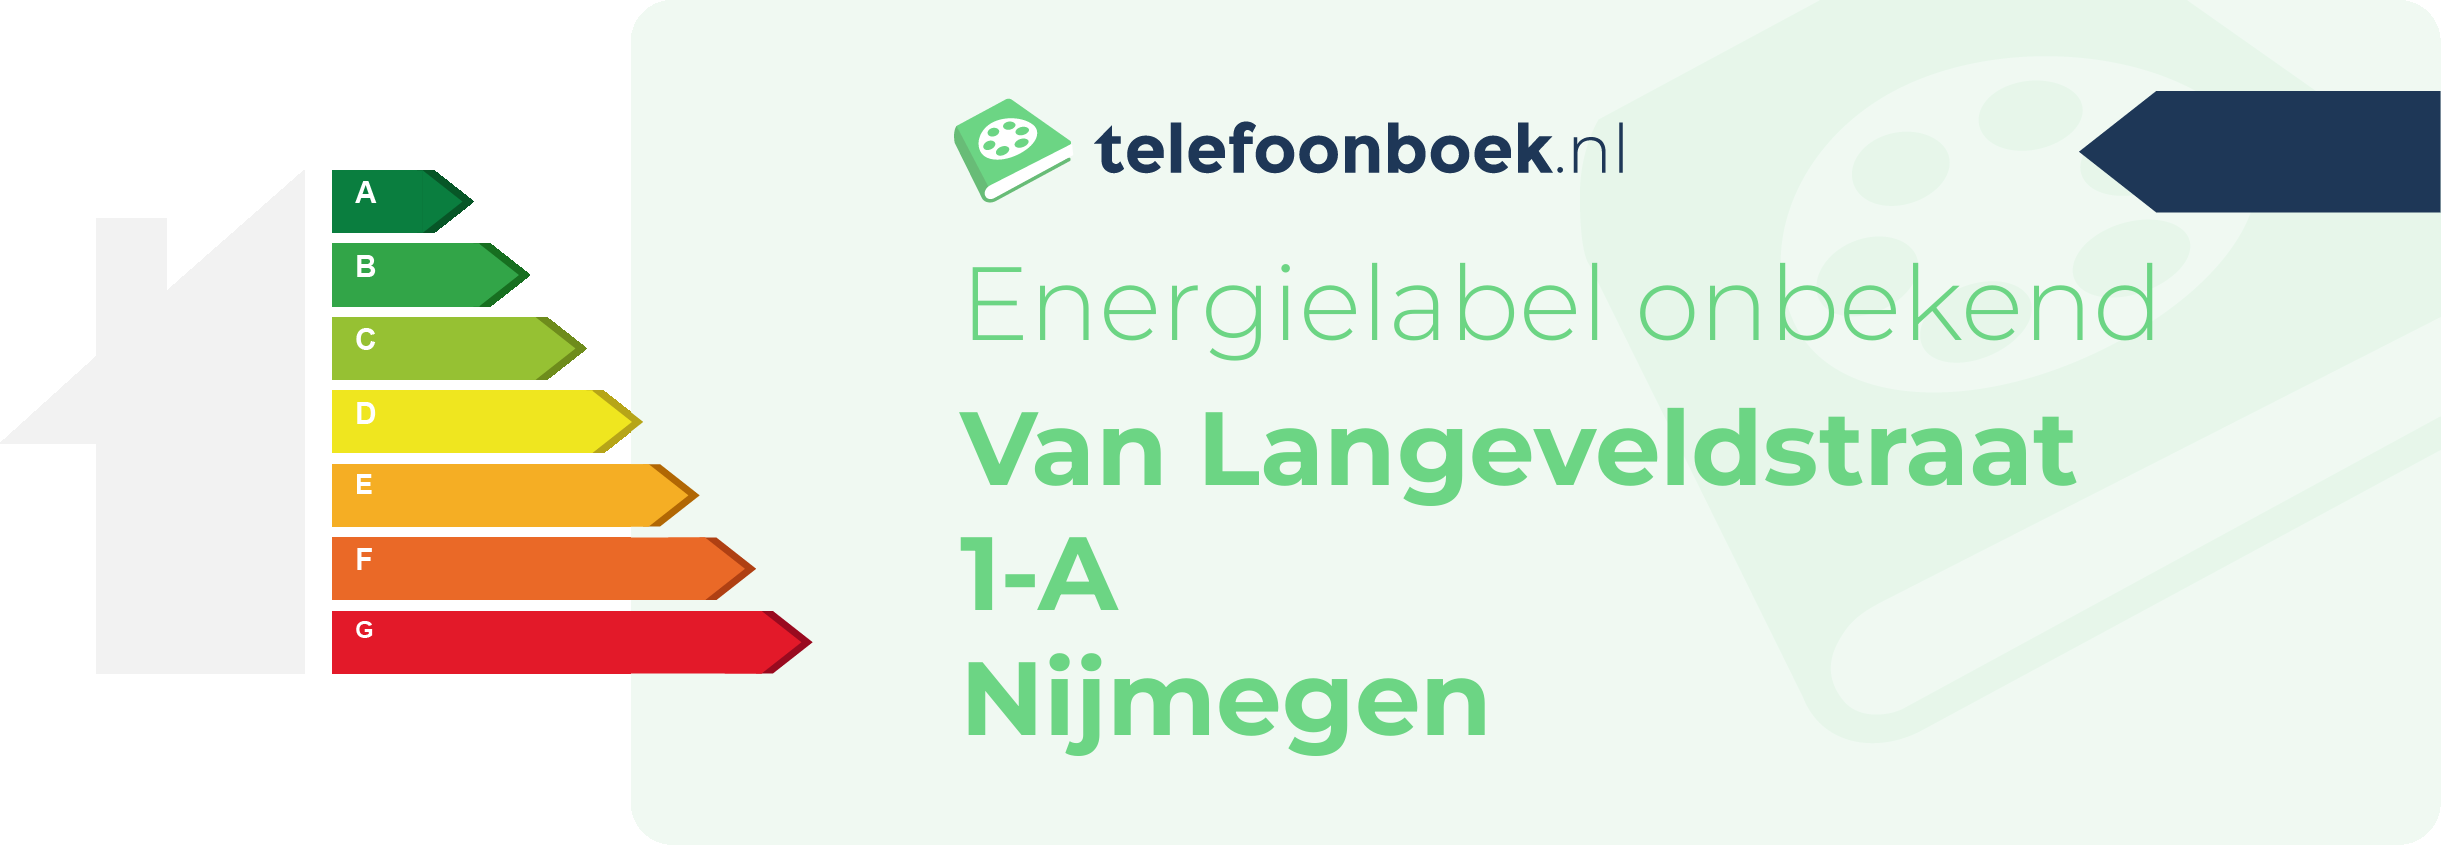 Energielabel Van Langeveldstraat 1-A Nijmegen